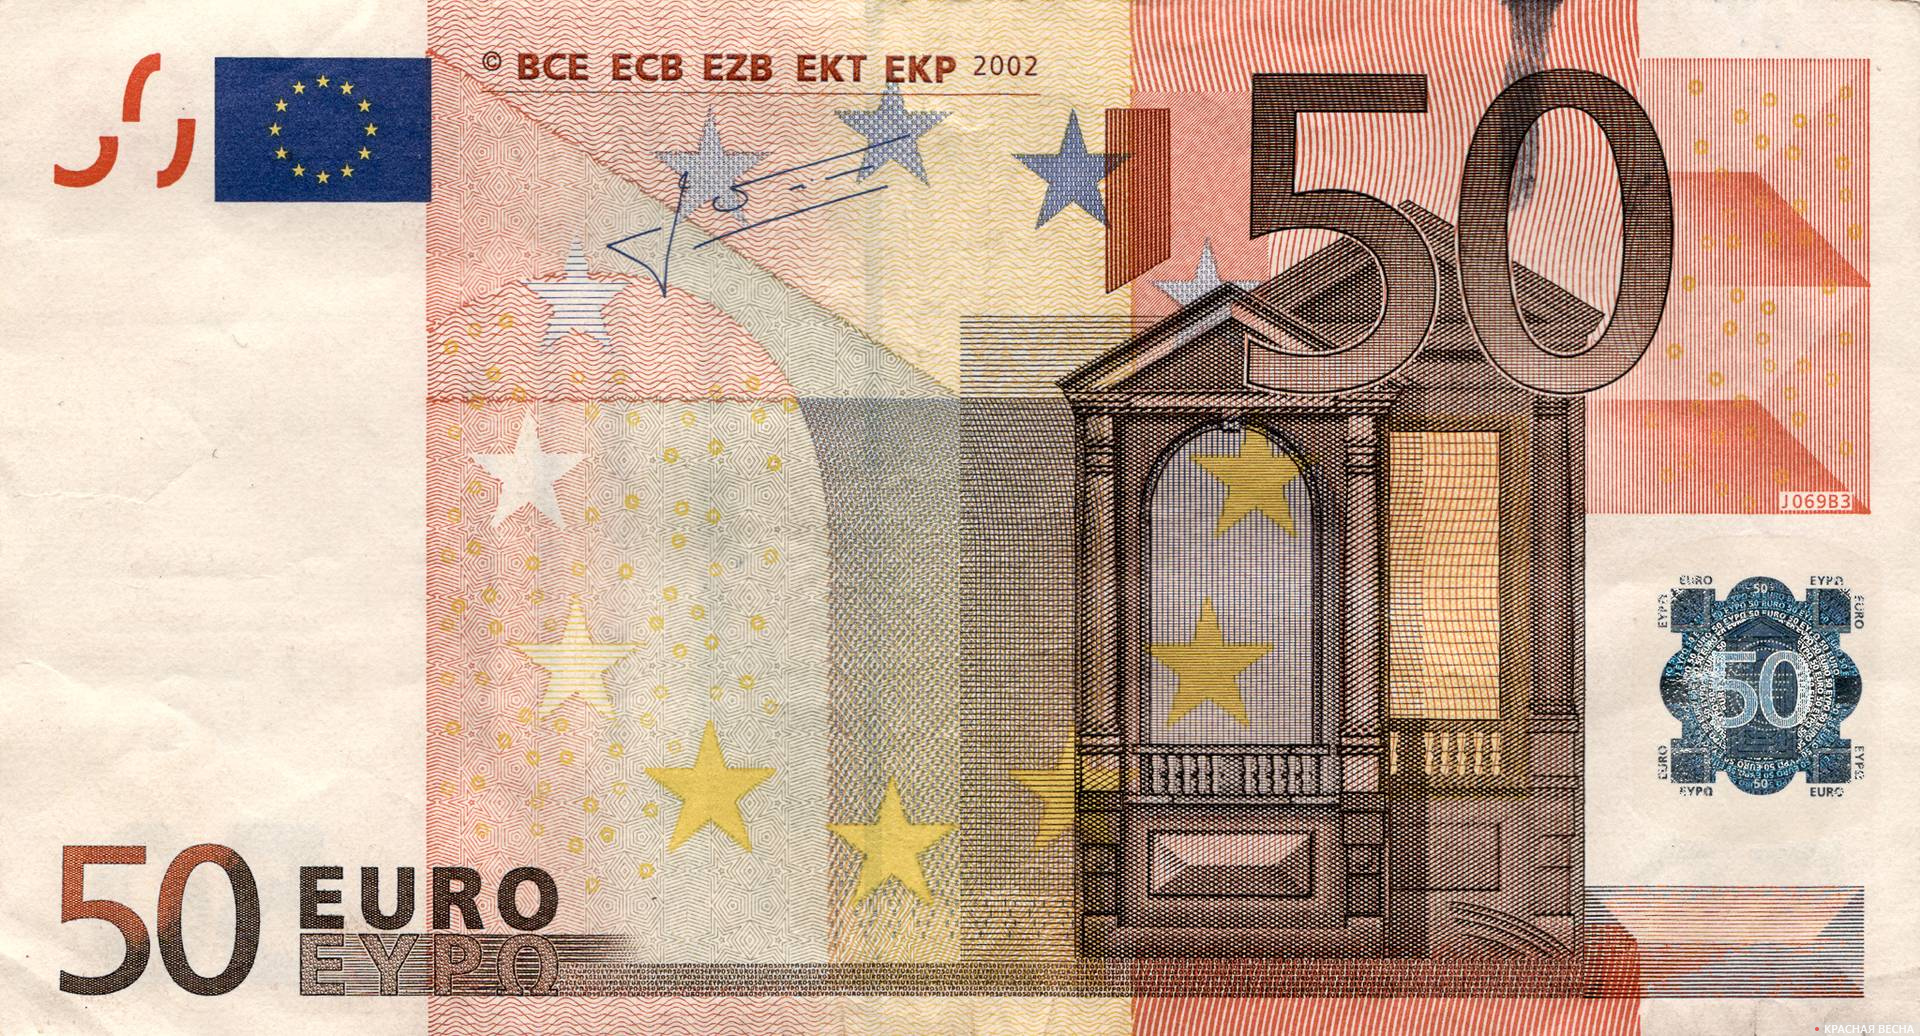 Банкнота 50 евро